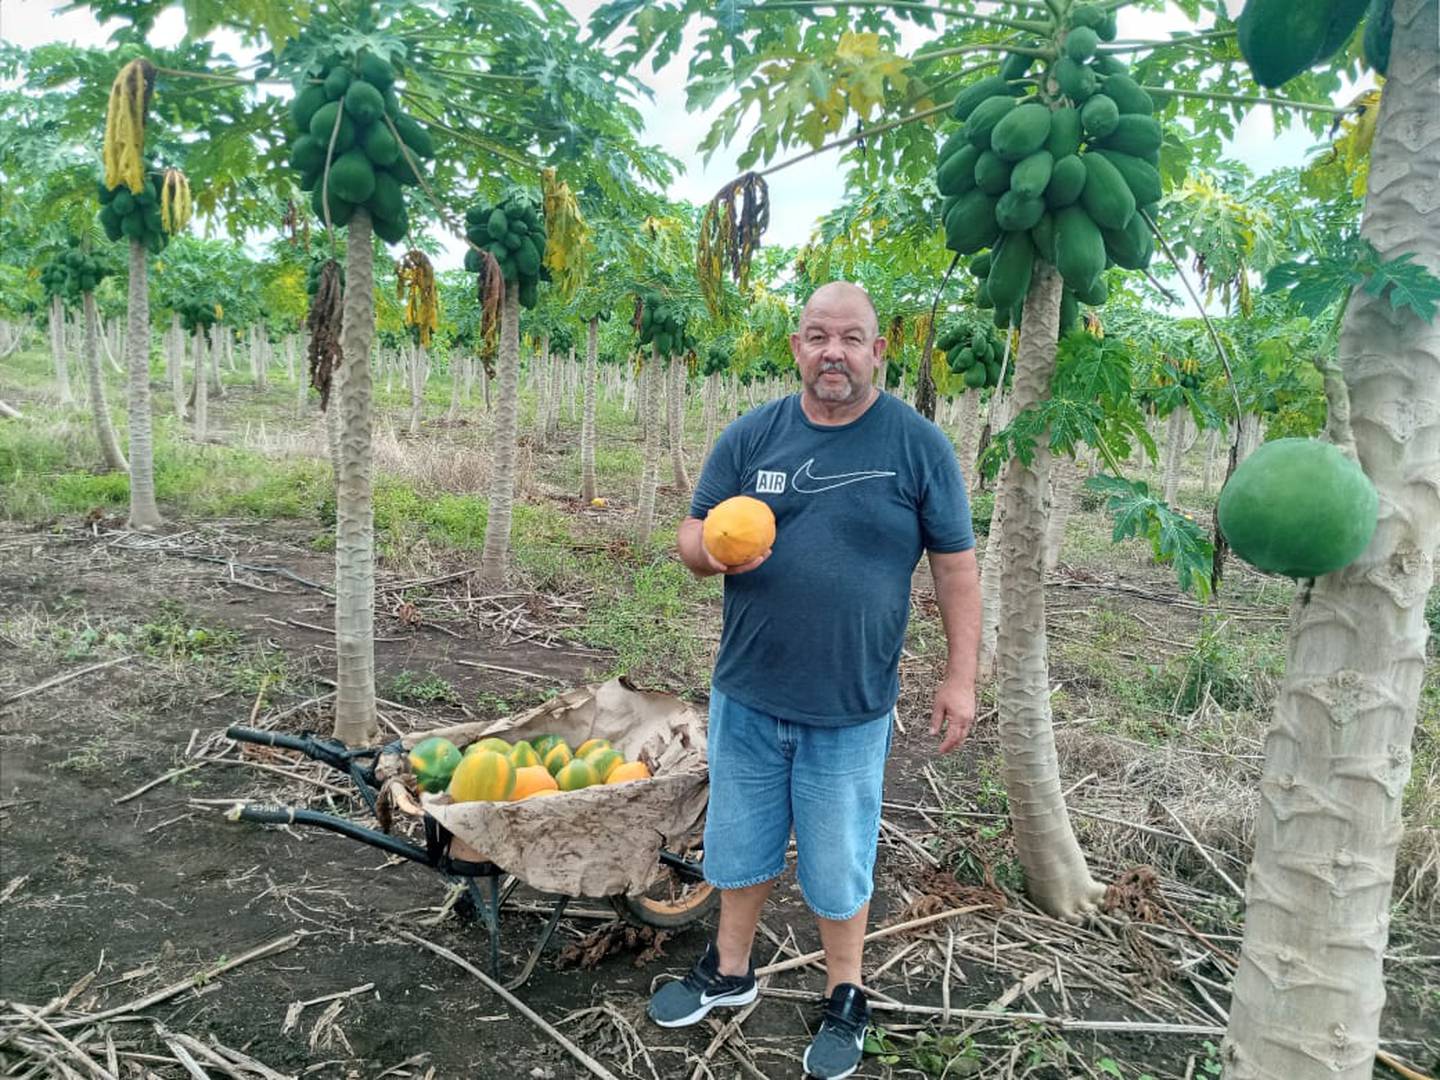 Juan Emilio Castro Castro, de 55 años, se encontró un entierro  porque estaba limpiando las zonas verdes de la propiedad que habían comprado en Miramar de Puntarenas